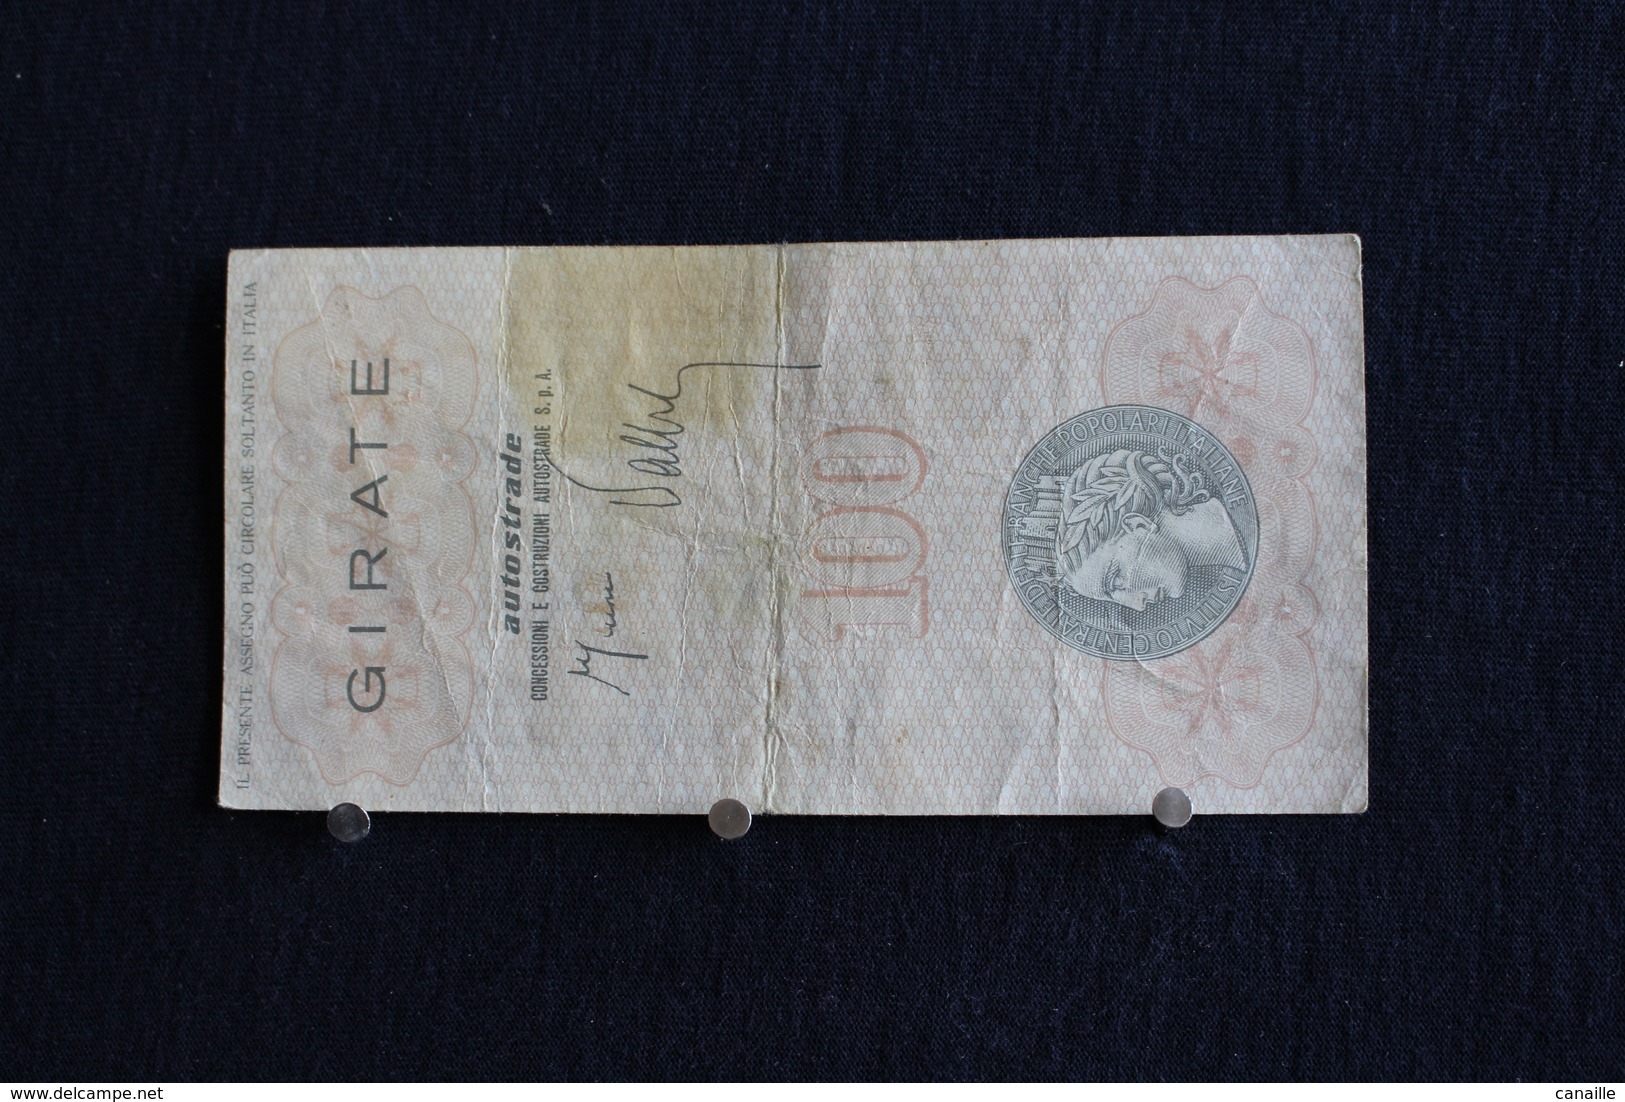 4 / Italie / 1946:Royaume / Biglietti-L'Istituto Centrale Delle Banche Popolari Italiane,17.7.77 - 100 Lire - Cento Lire - 100 Lire